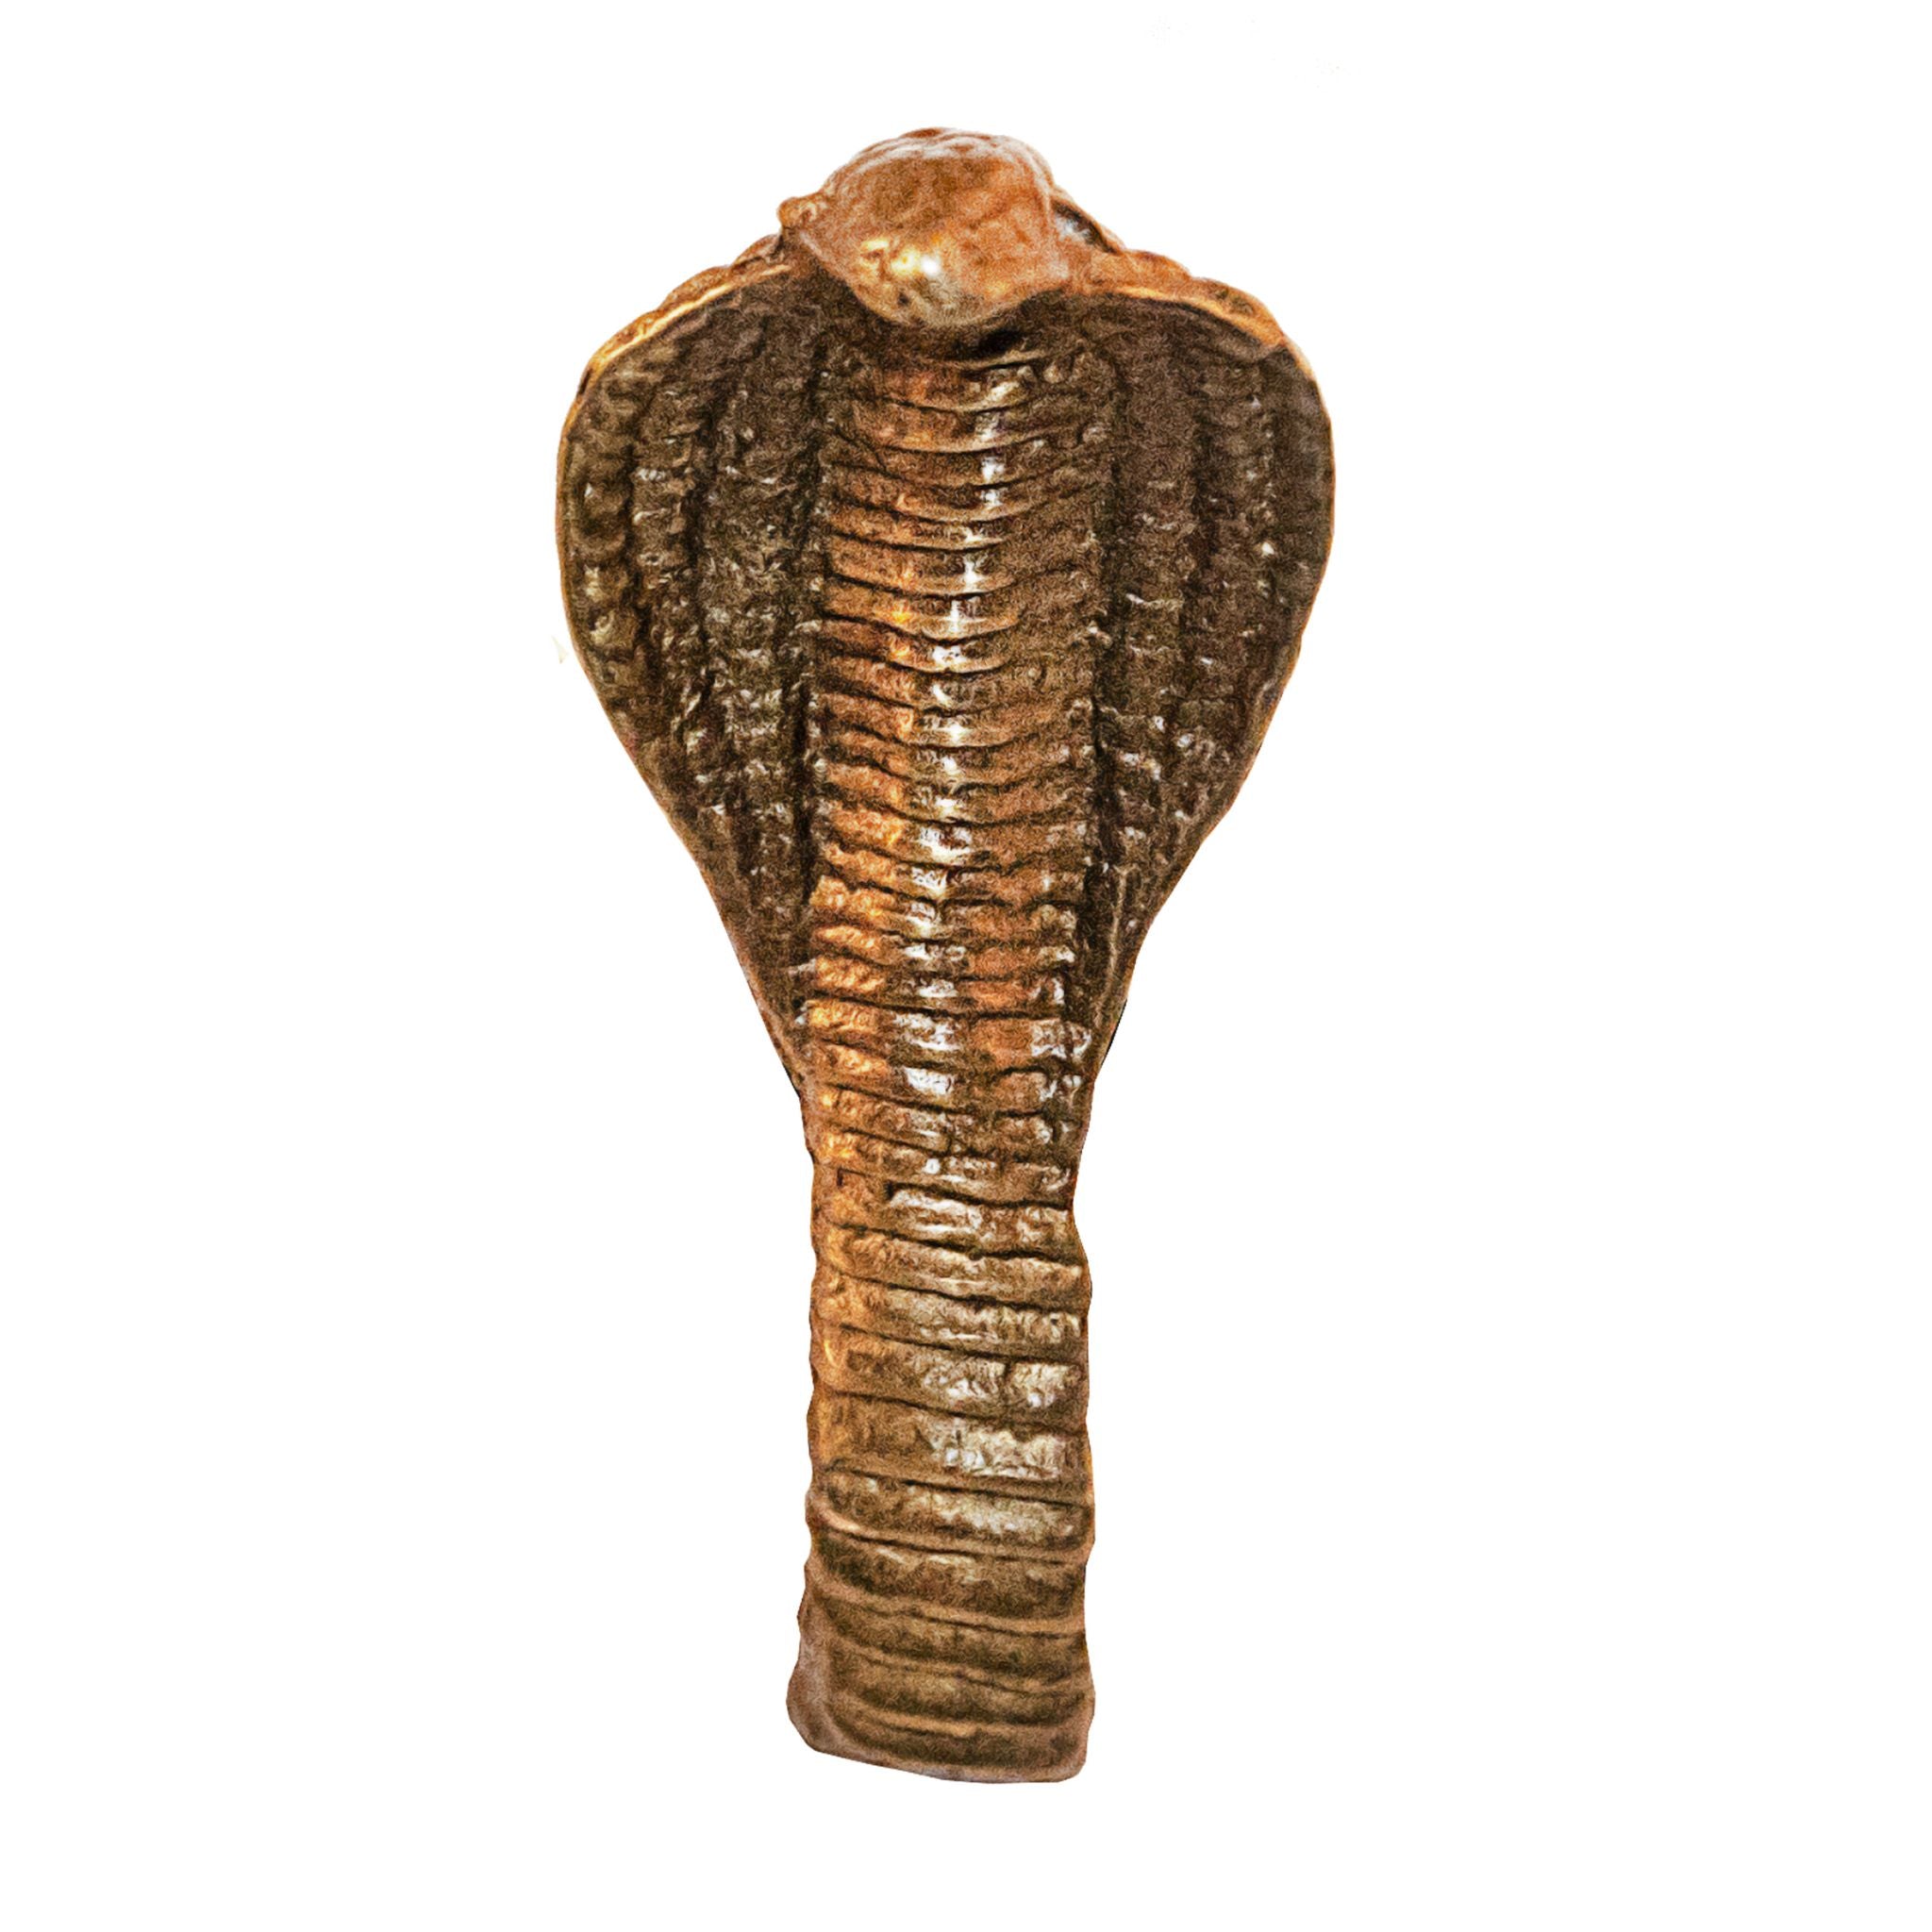 A brass knob shaped like a cobra head.